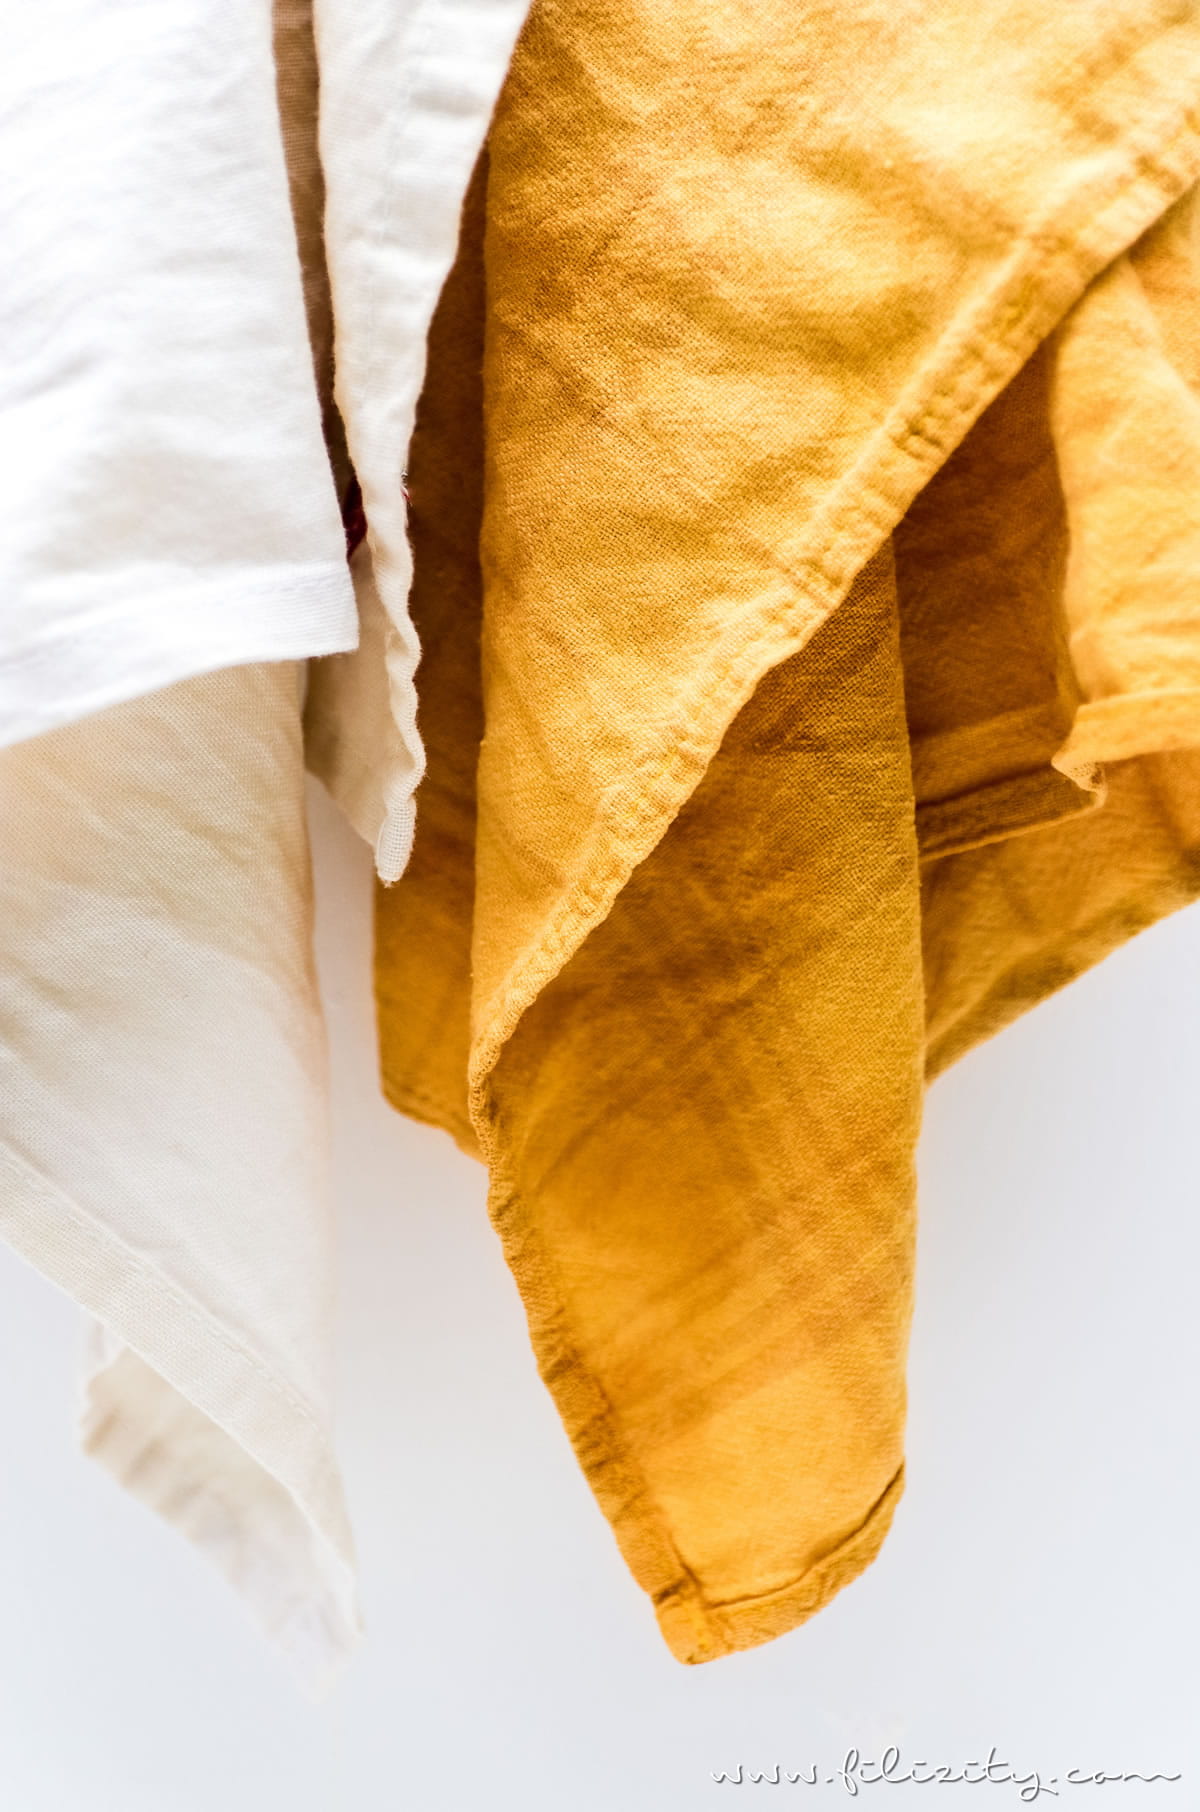 So einfach kannst du Stoffe natürlich färben - DIY Textilfarbe mit Kurkuma | Filizity.com | DIY-Blog aus dem Rheinland #diy #natur #kurkuma